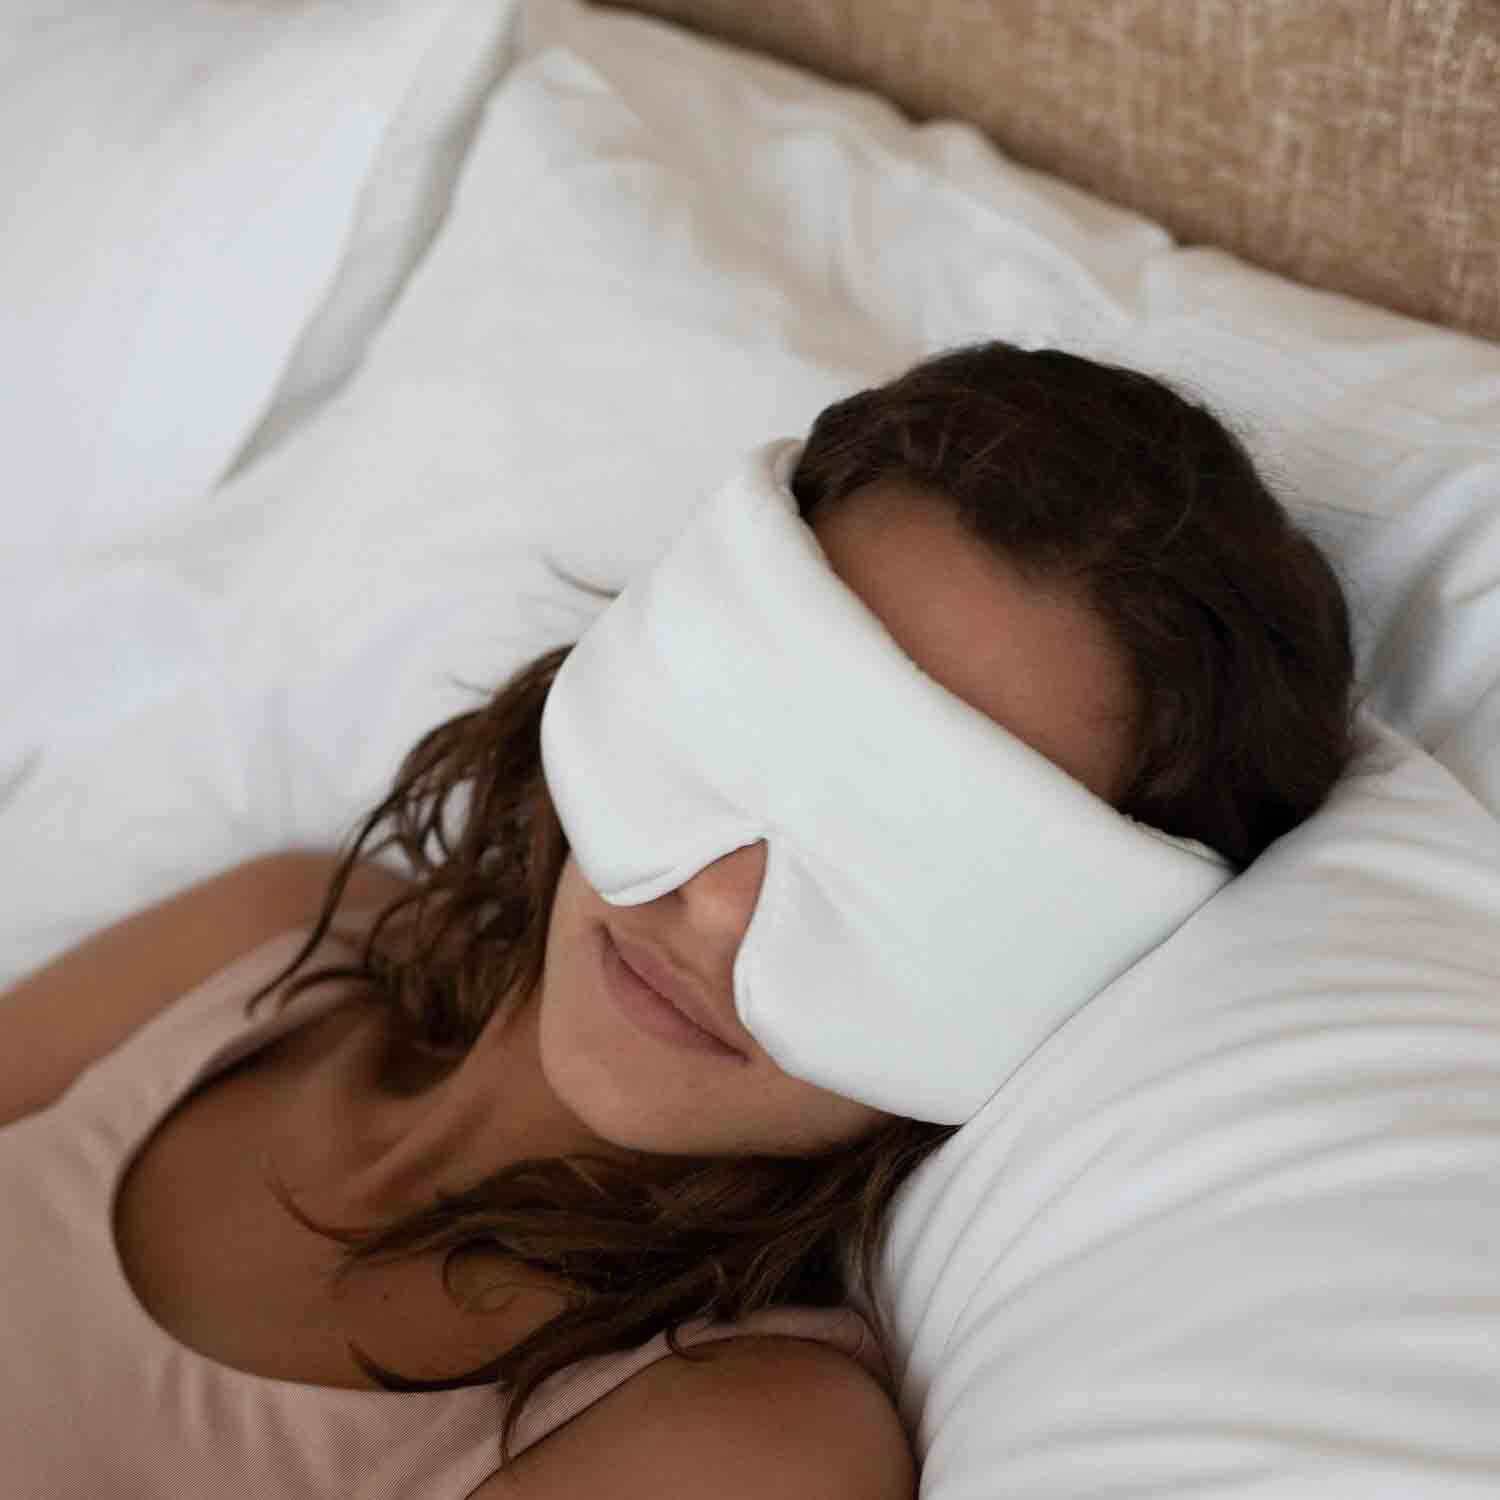 manta weighted sleep mask